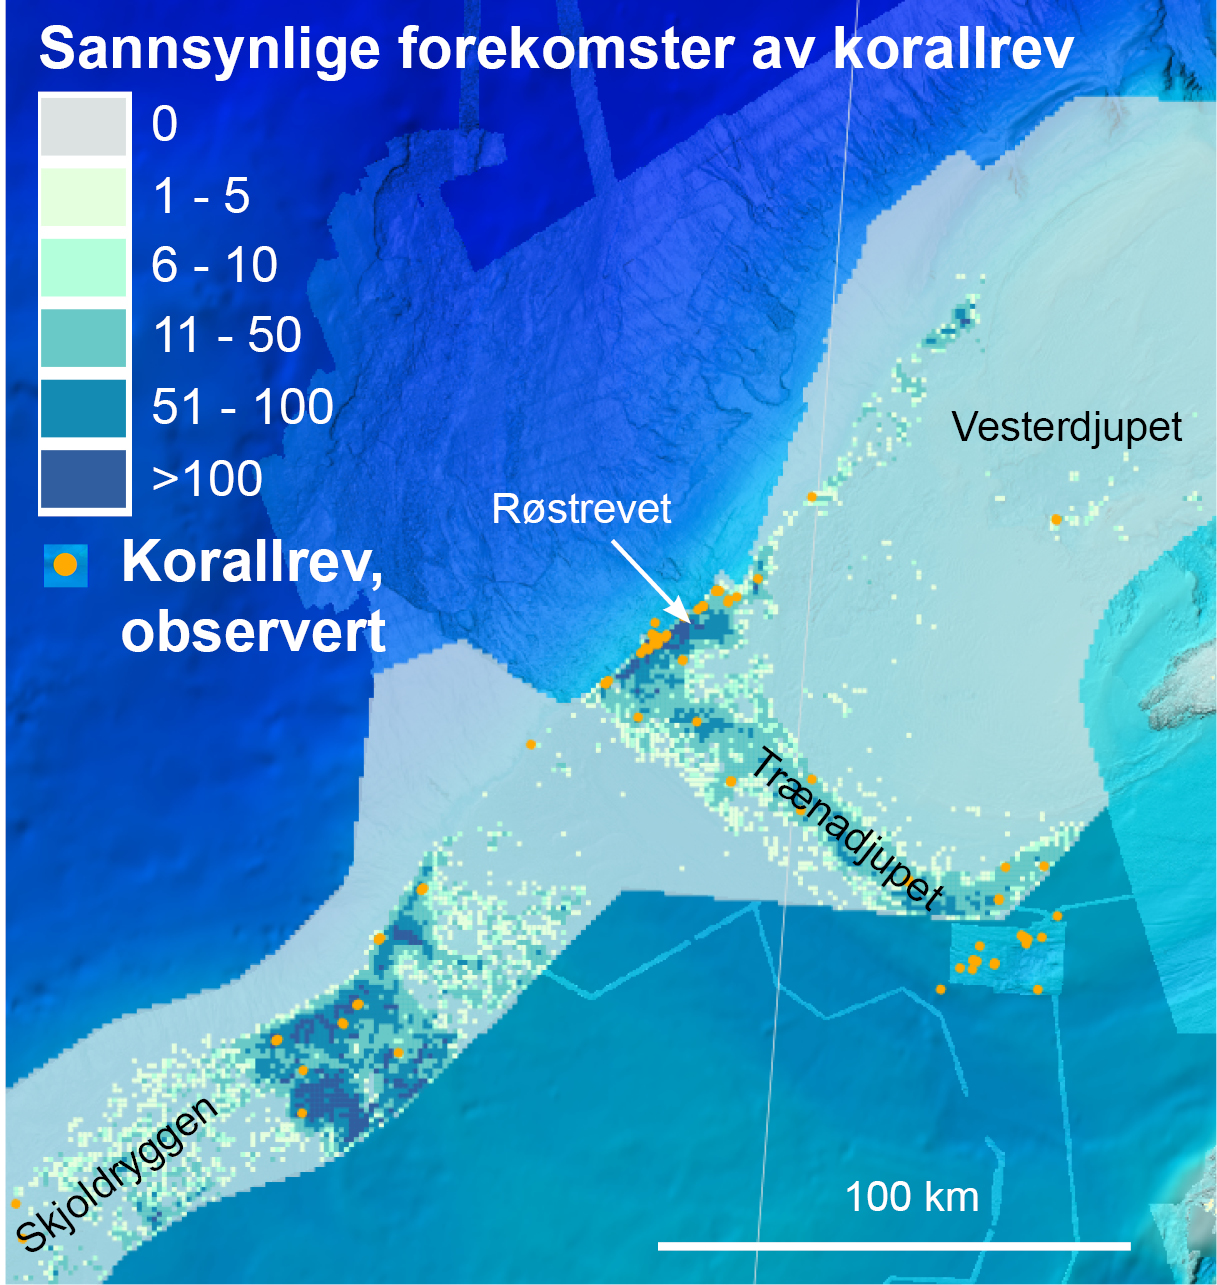 Antall sannsynlige forekomster av korallrev pr. kvadratkilometer i området Skjoldryggen-Røstrevet-Vesterdjupet utenfor kysten av Nordland. Totalt er det klassifisert nesten 140 000 sannsynlige forekomster av korallrev i dette området.